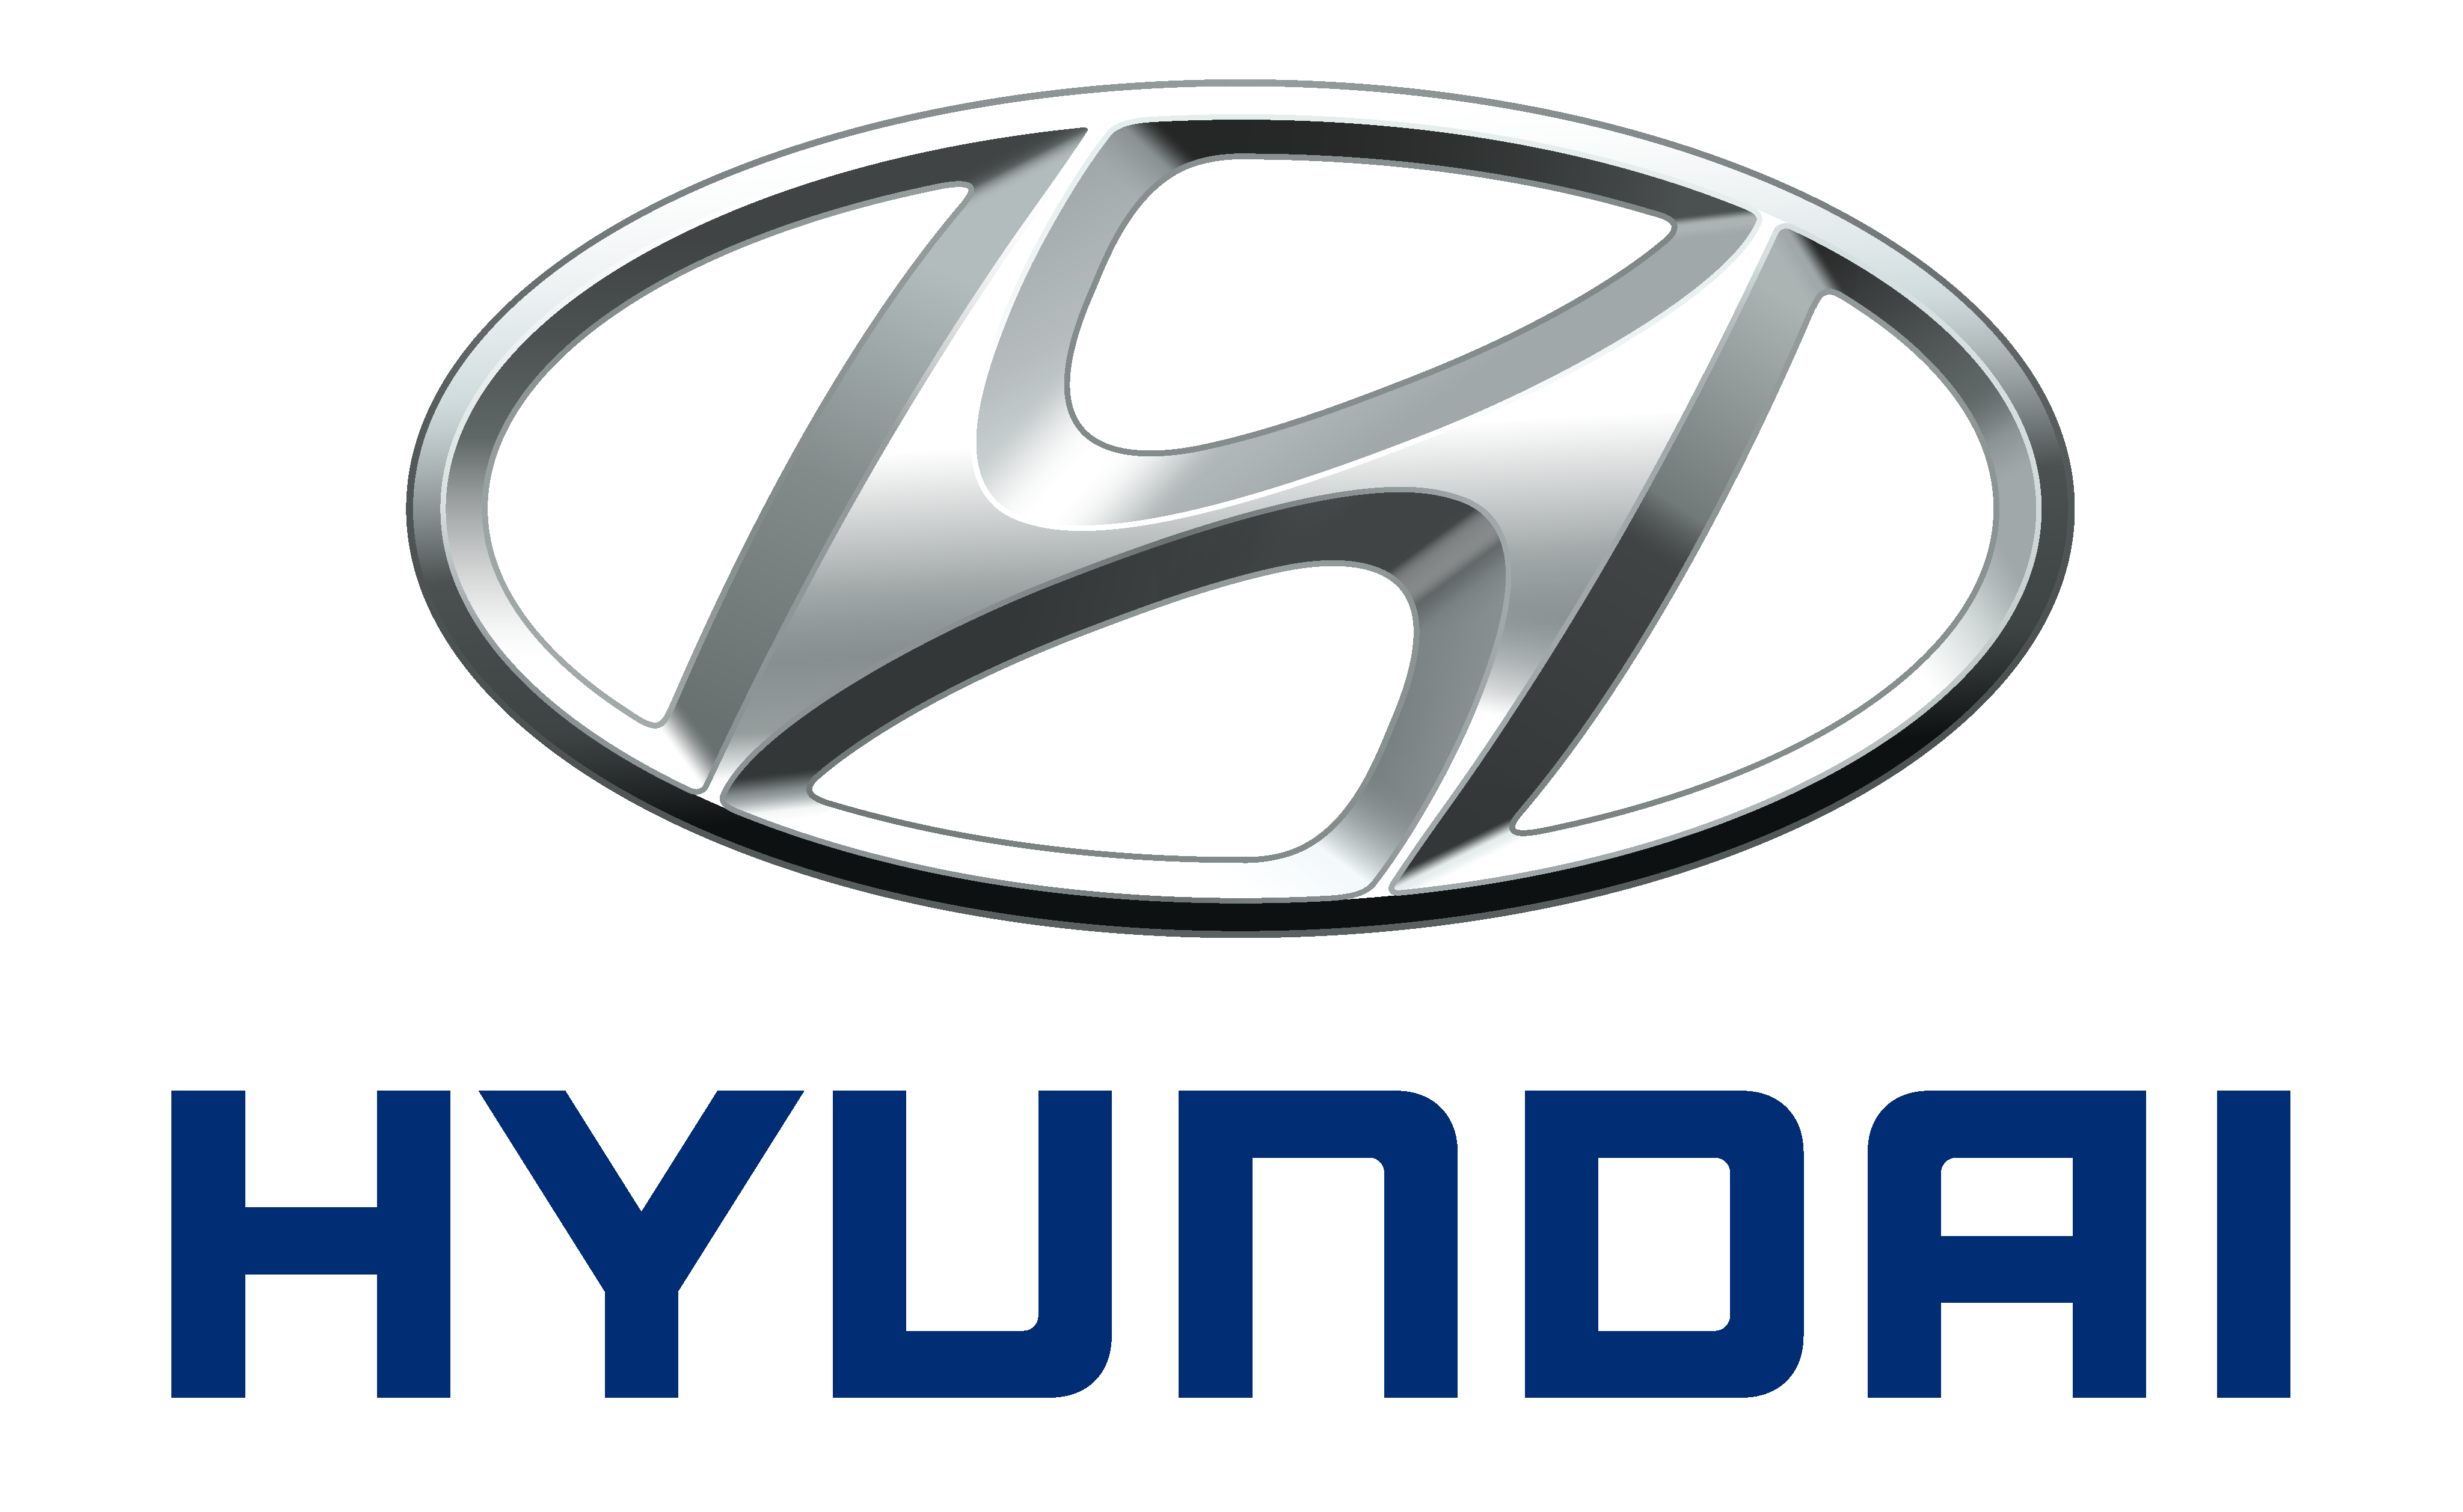 hyundai-logo-0